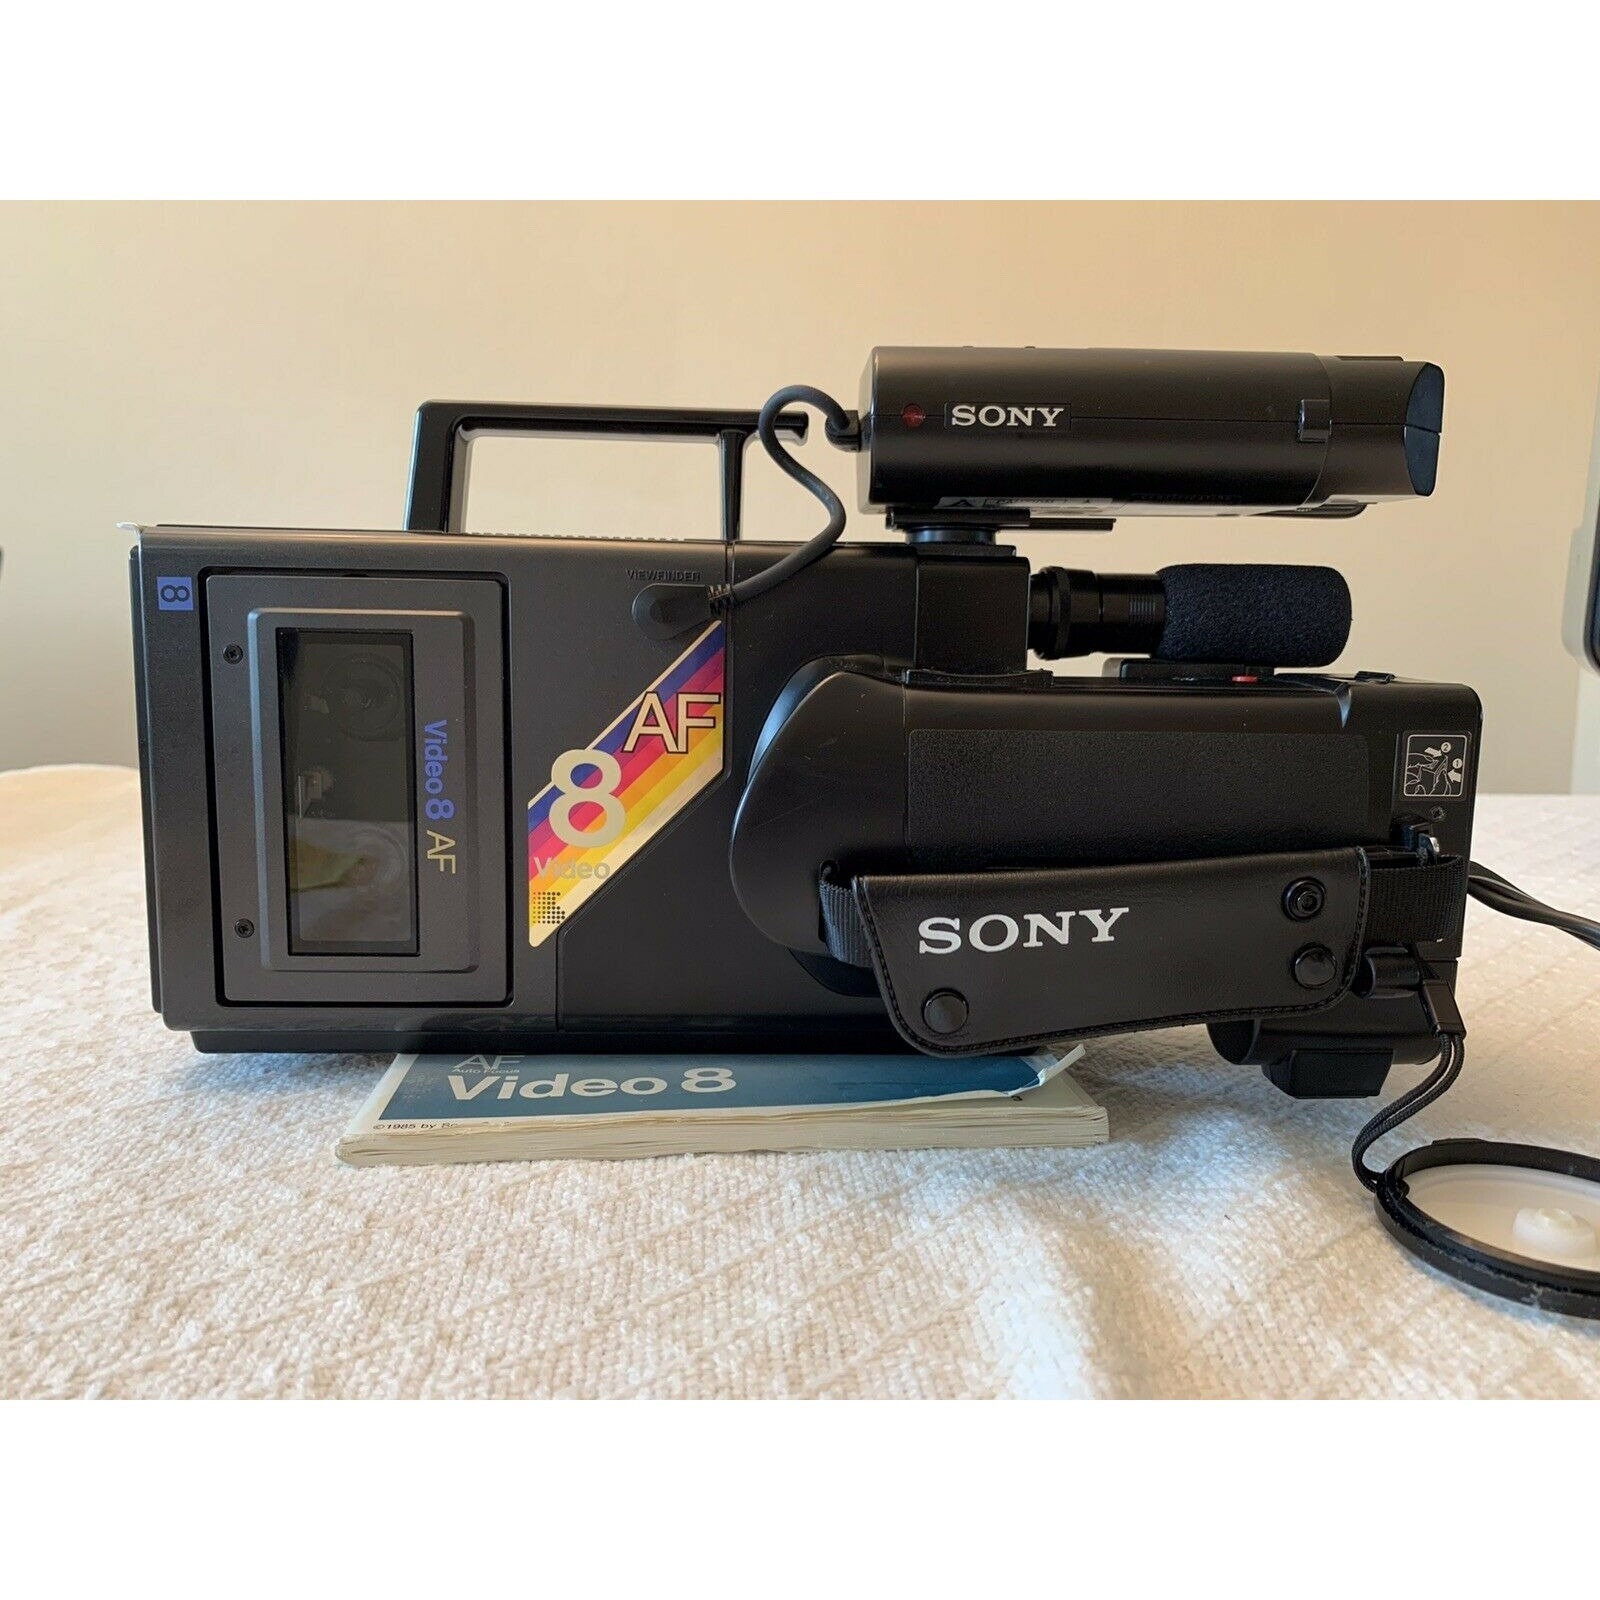 Camara o reproductor cintas video 8mm Videocámaras de segunda mano baratas